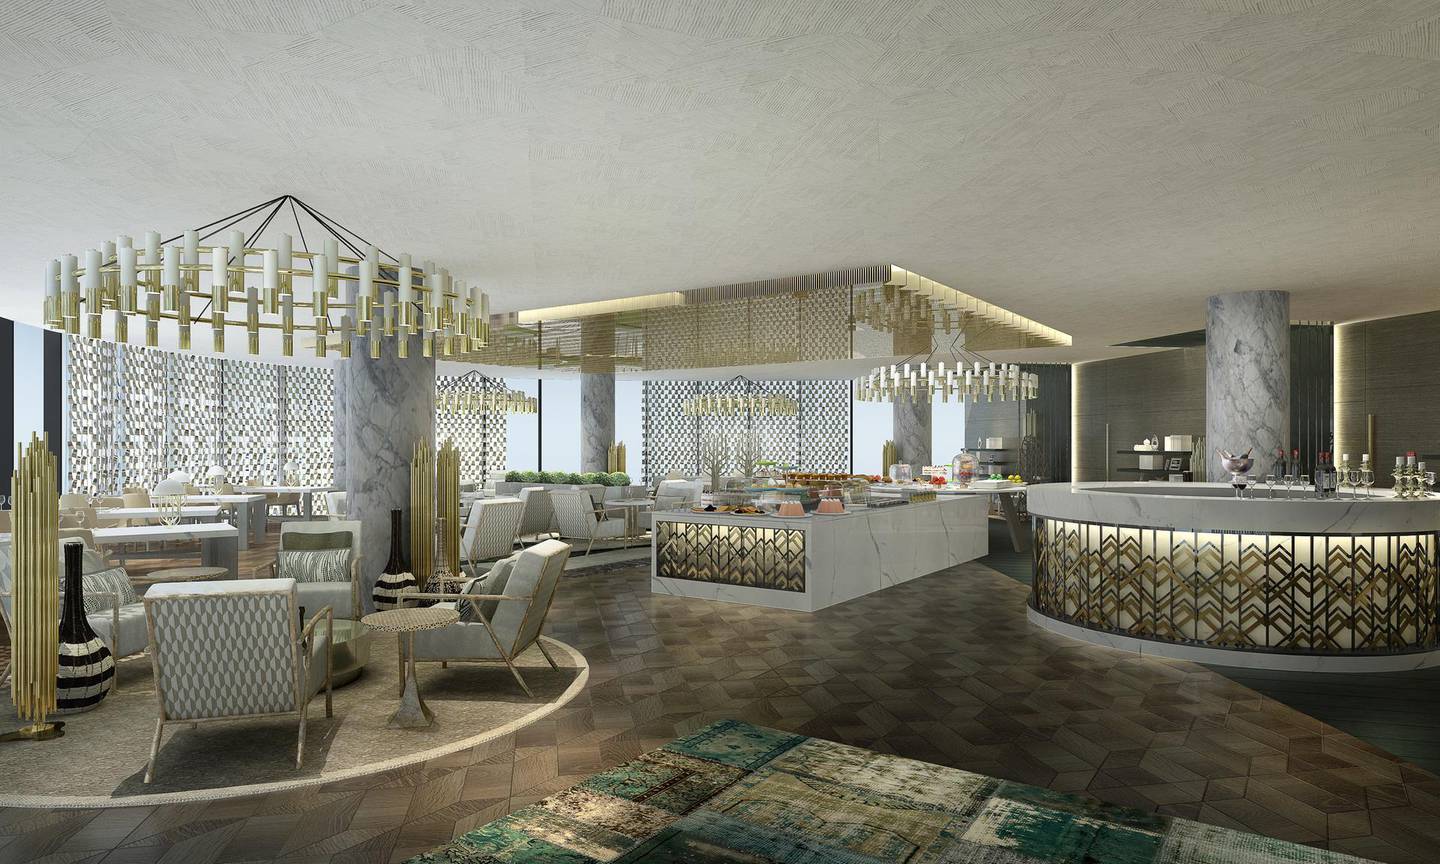 The Lounge dining outlet at Jumeirah's new Saadiyat Island resort. Jumeirah Group